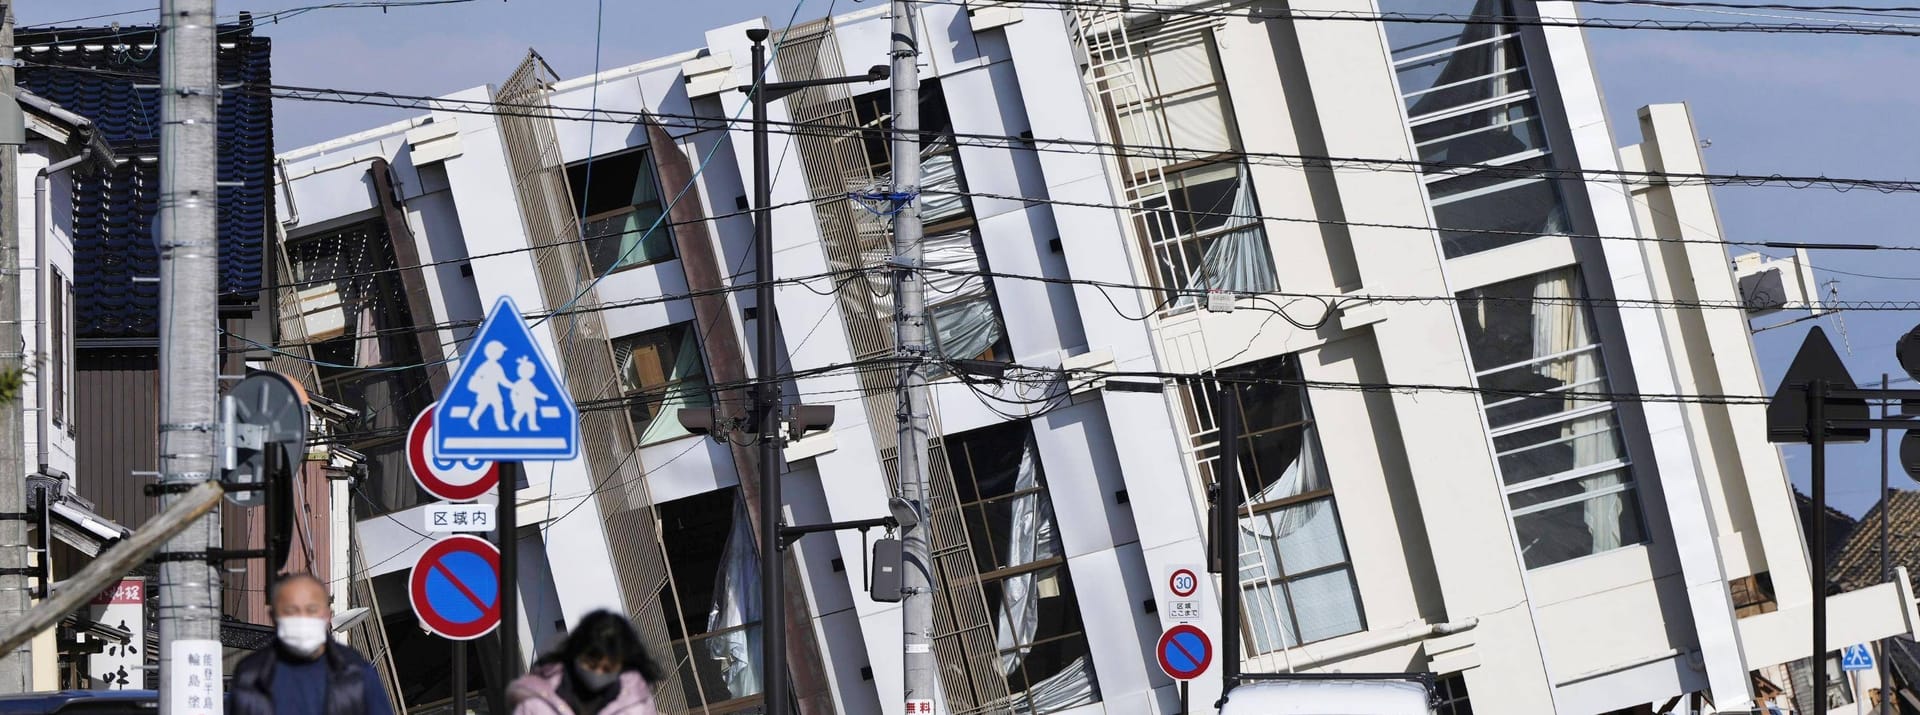 Das Erdbeben war so stark, dass ein Wohnhaus in Wajima komplett umkippte. Bis jetzt ist nicht bekannt, ob es beim Zusammenbruch des Hauses zu Toten oder Verletzten kam.